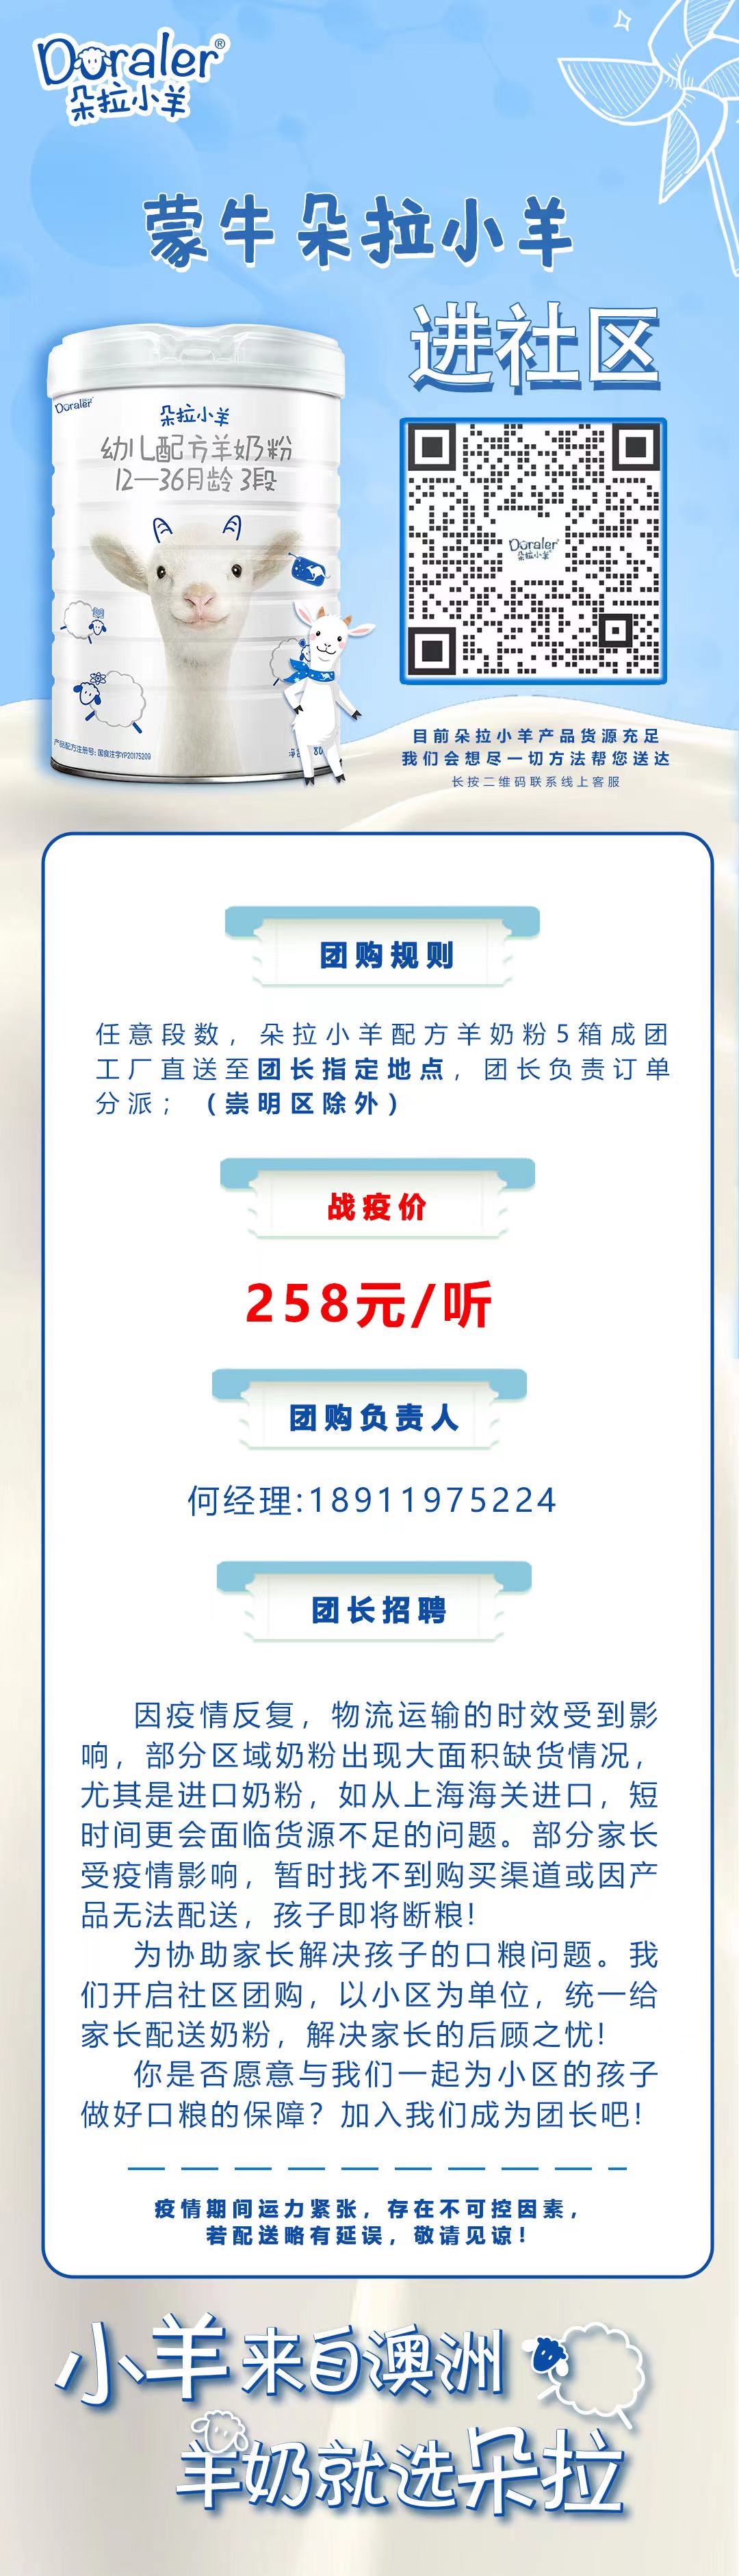 WeChat Image_20220409232622.jpg